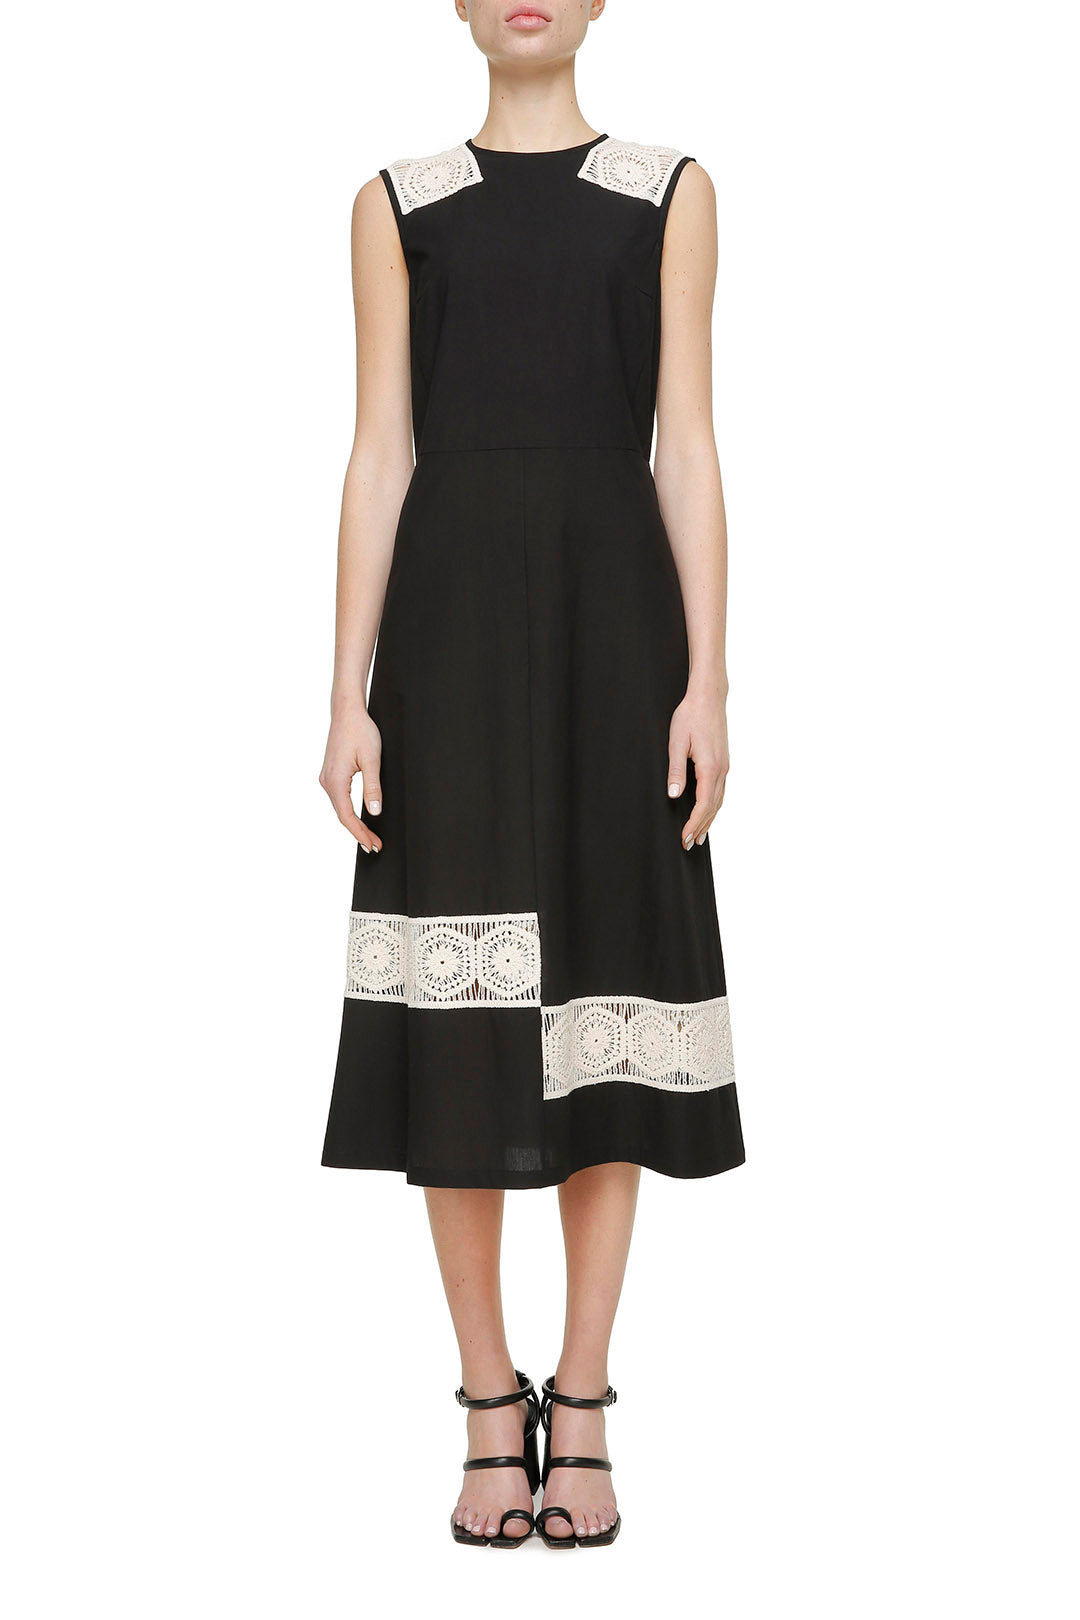 Black cotton dress with milk lace details